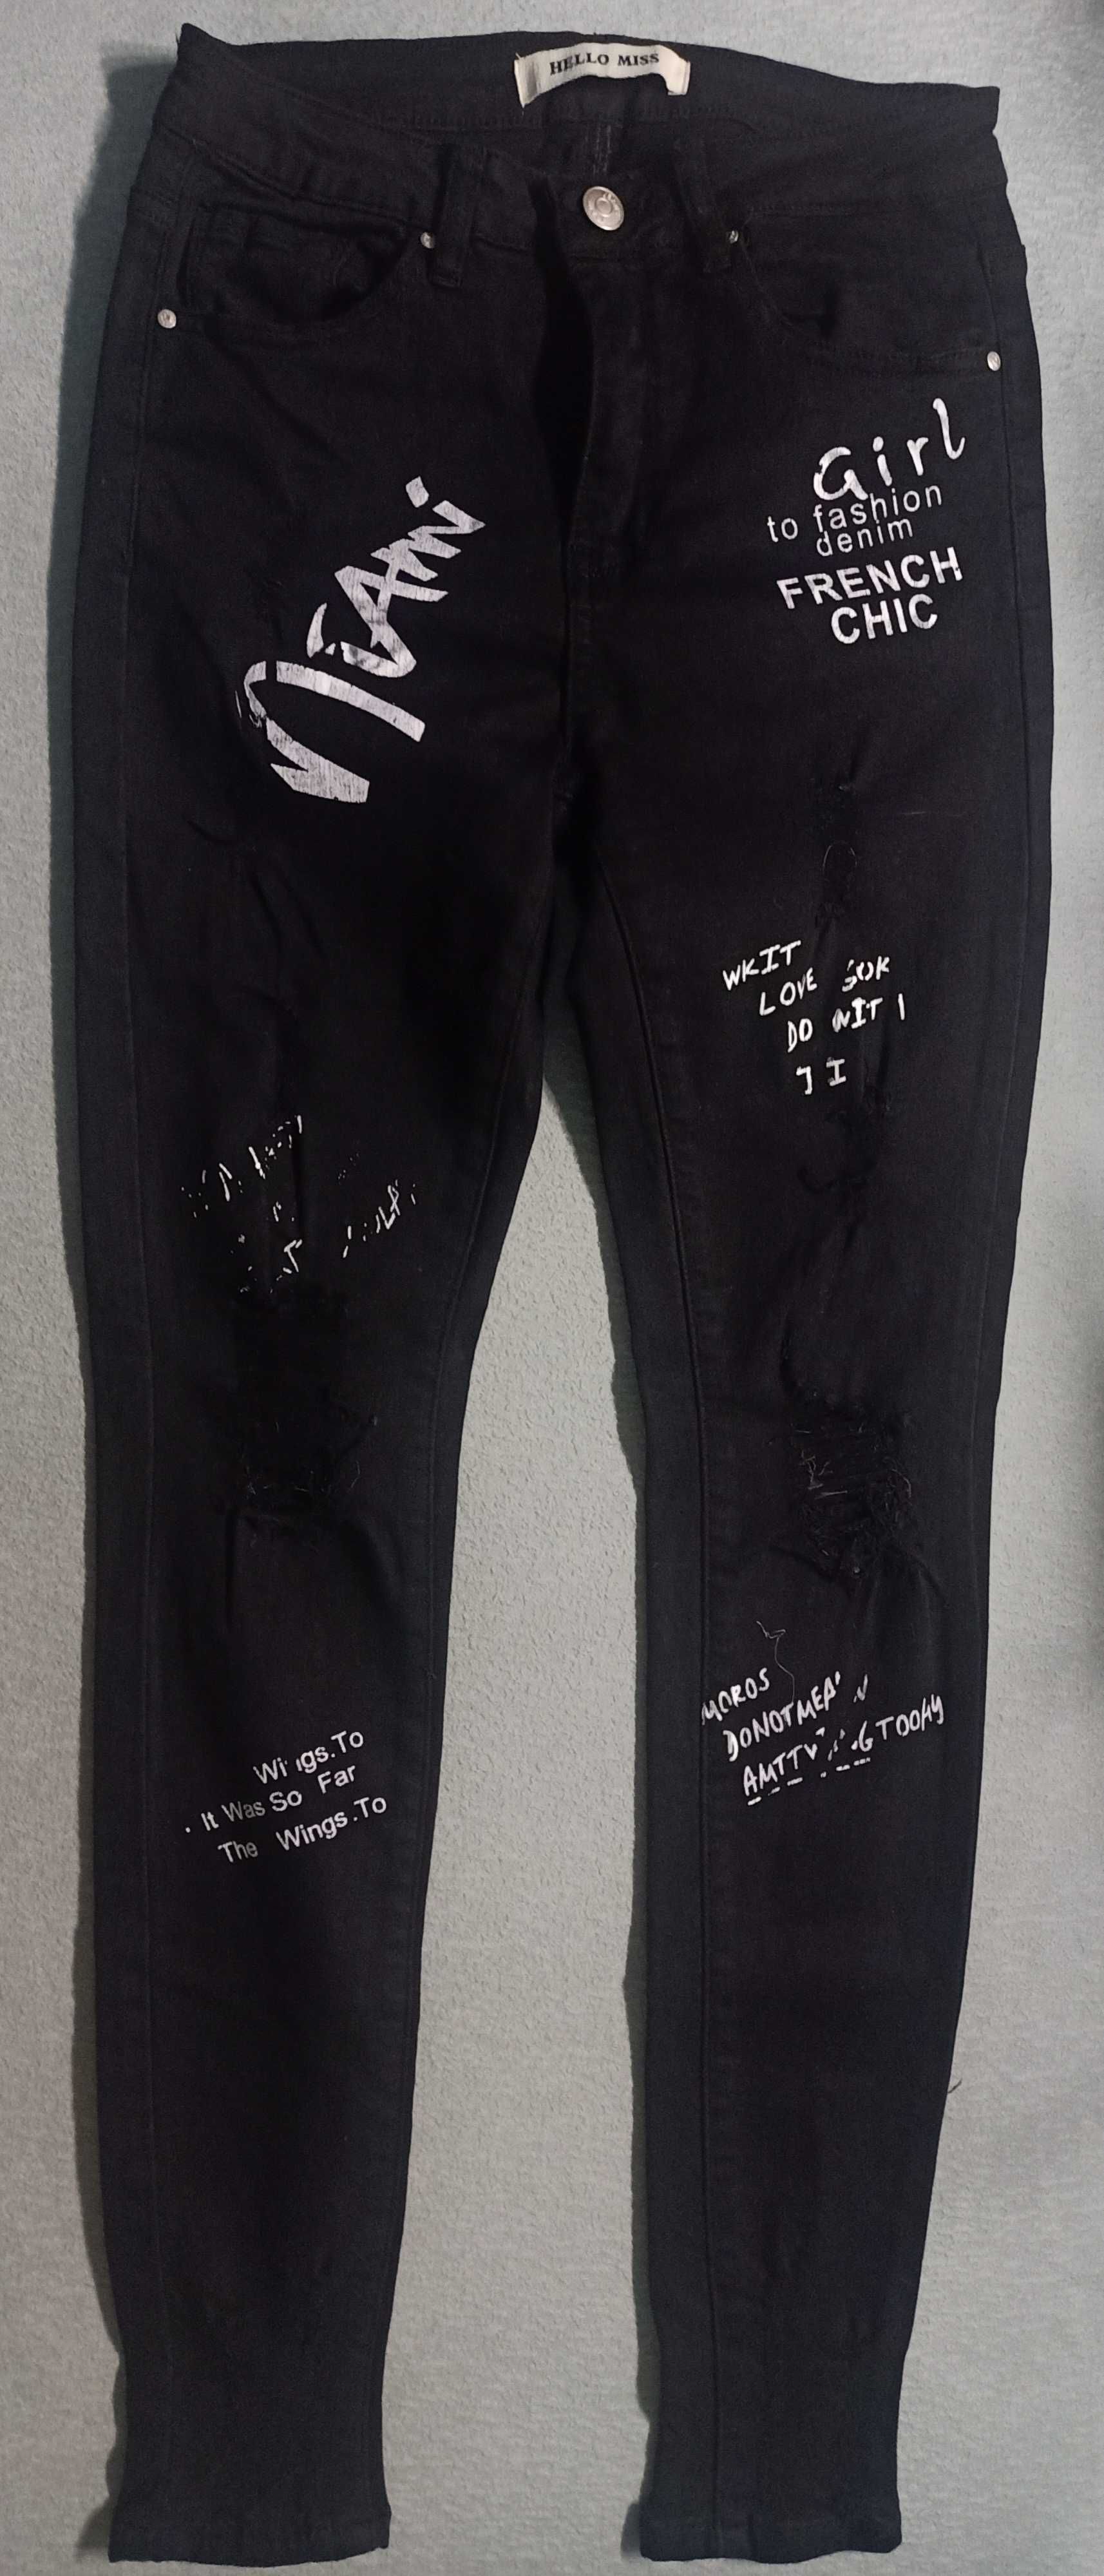 Spodnie z napisami i rozdarciami xxs/xs